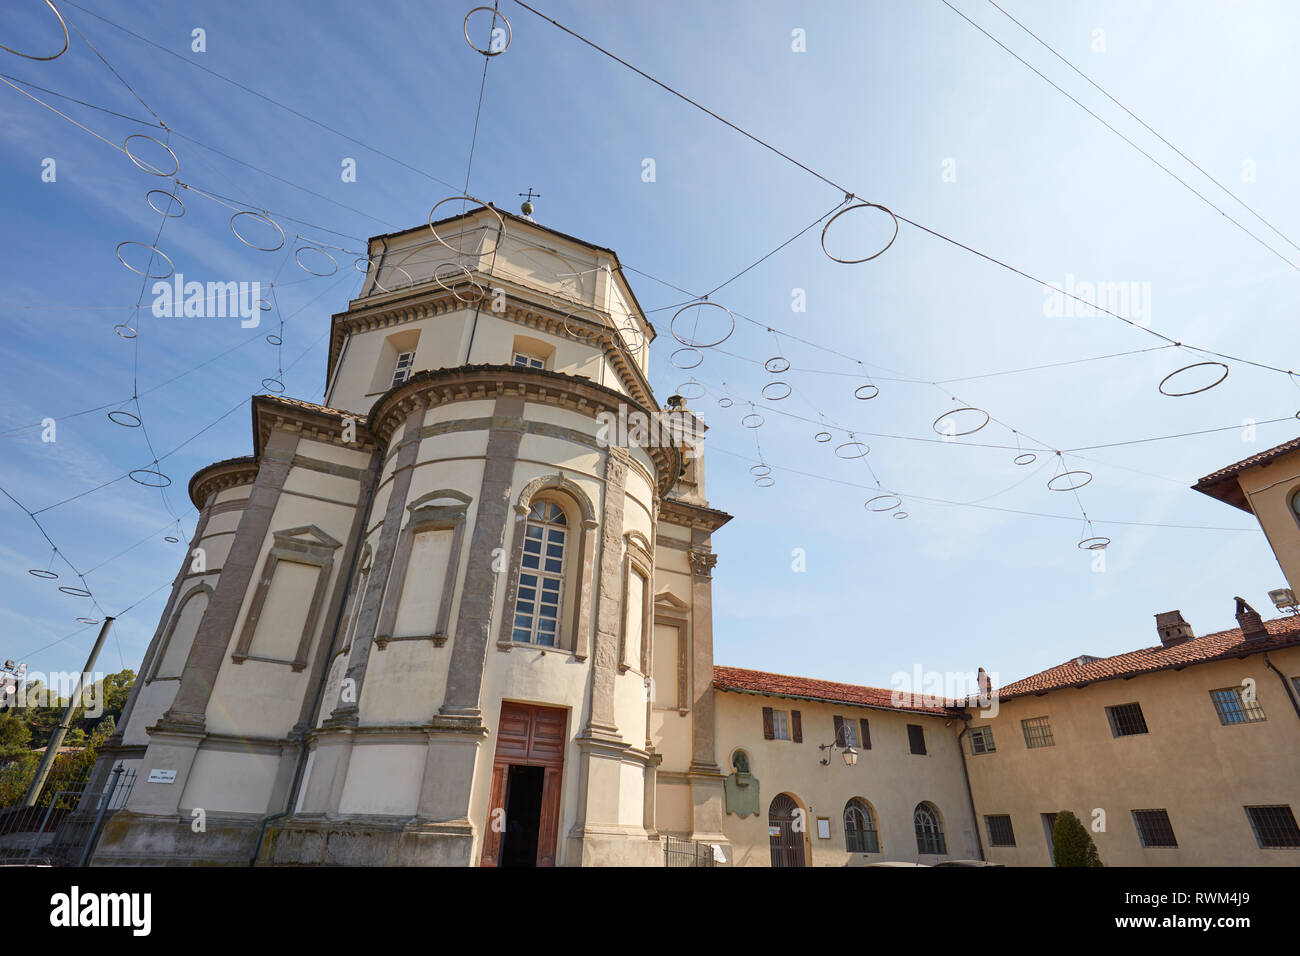 TURIN, Italien - 20 AUGUST 2017: Cappuccini oder der Kapuziner Mönche Kirche Fassade an einem sonnigen Sommertag in Turin, Italien Stockfoto